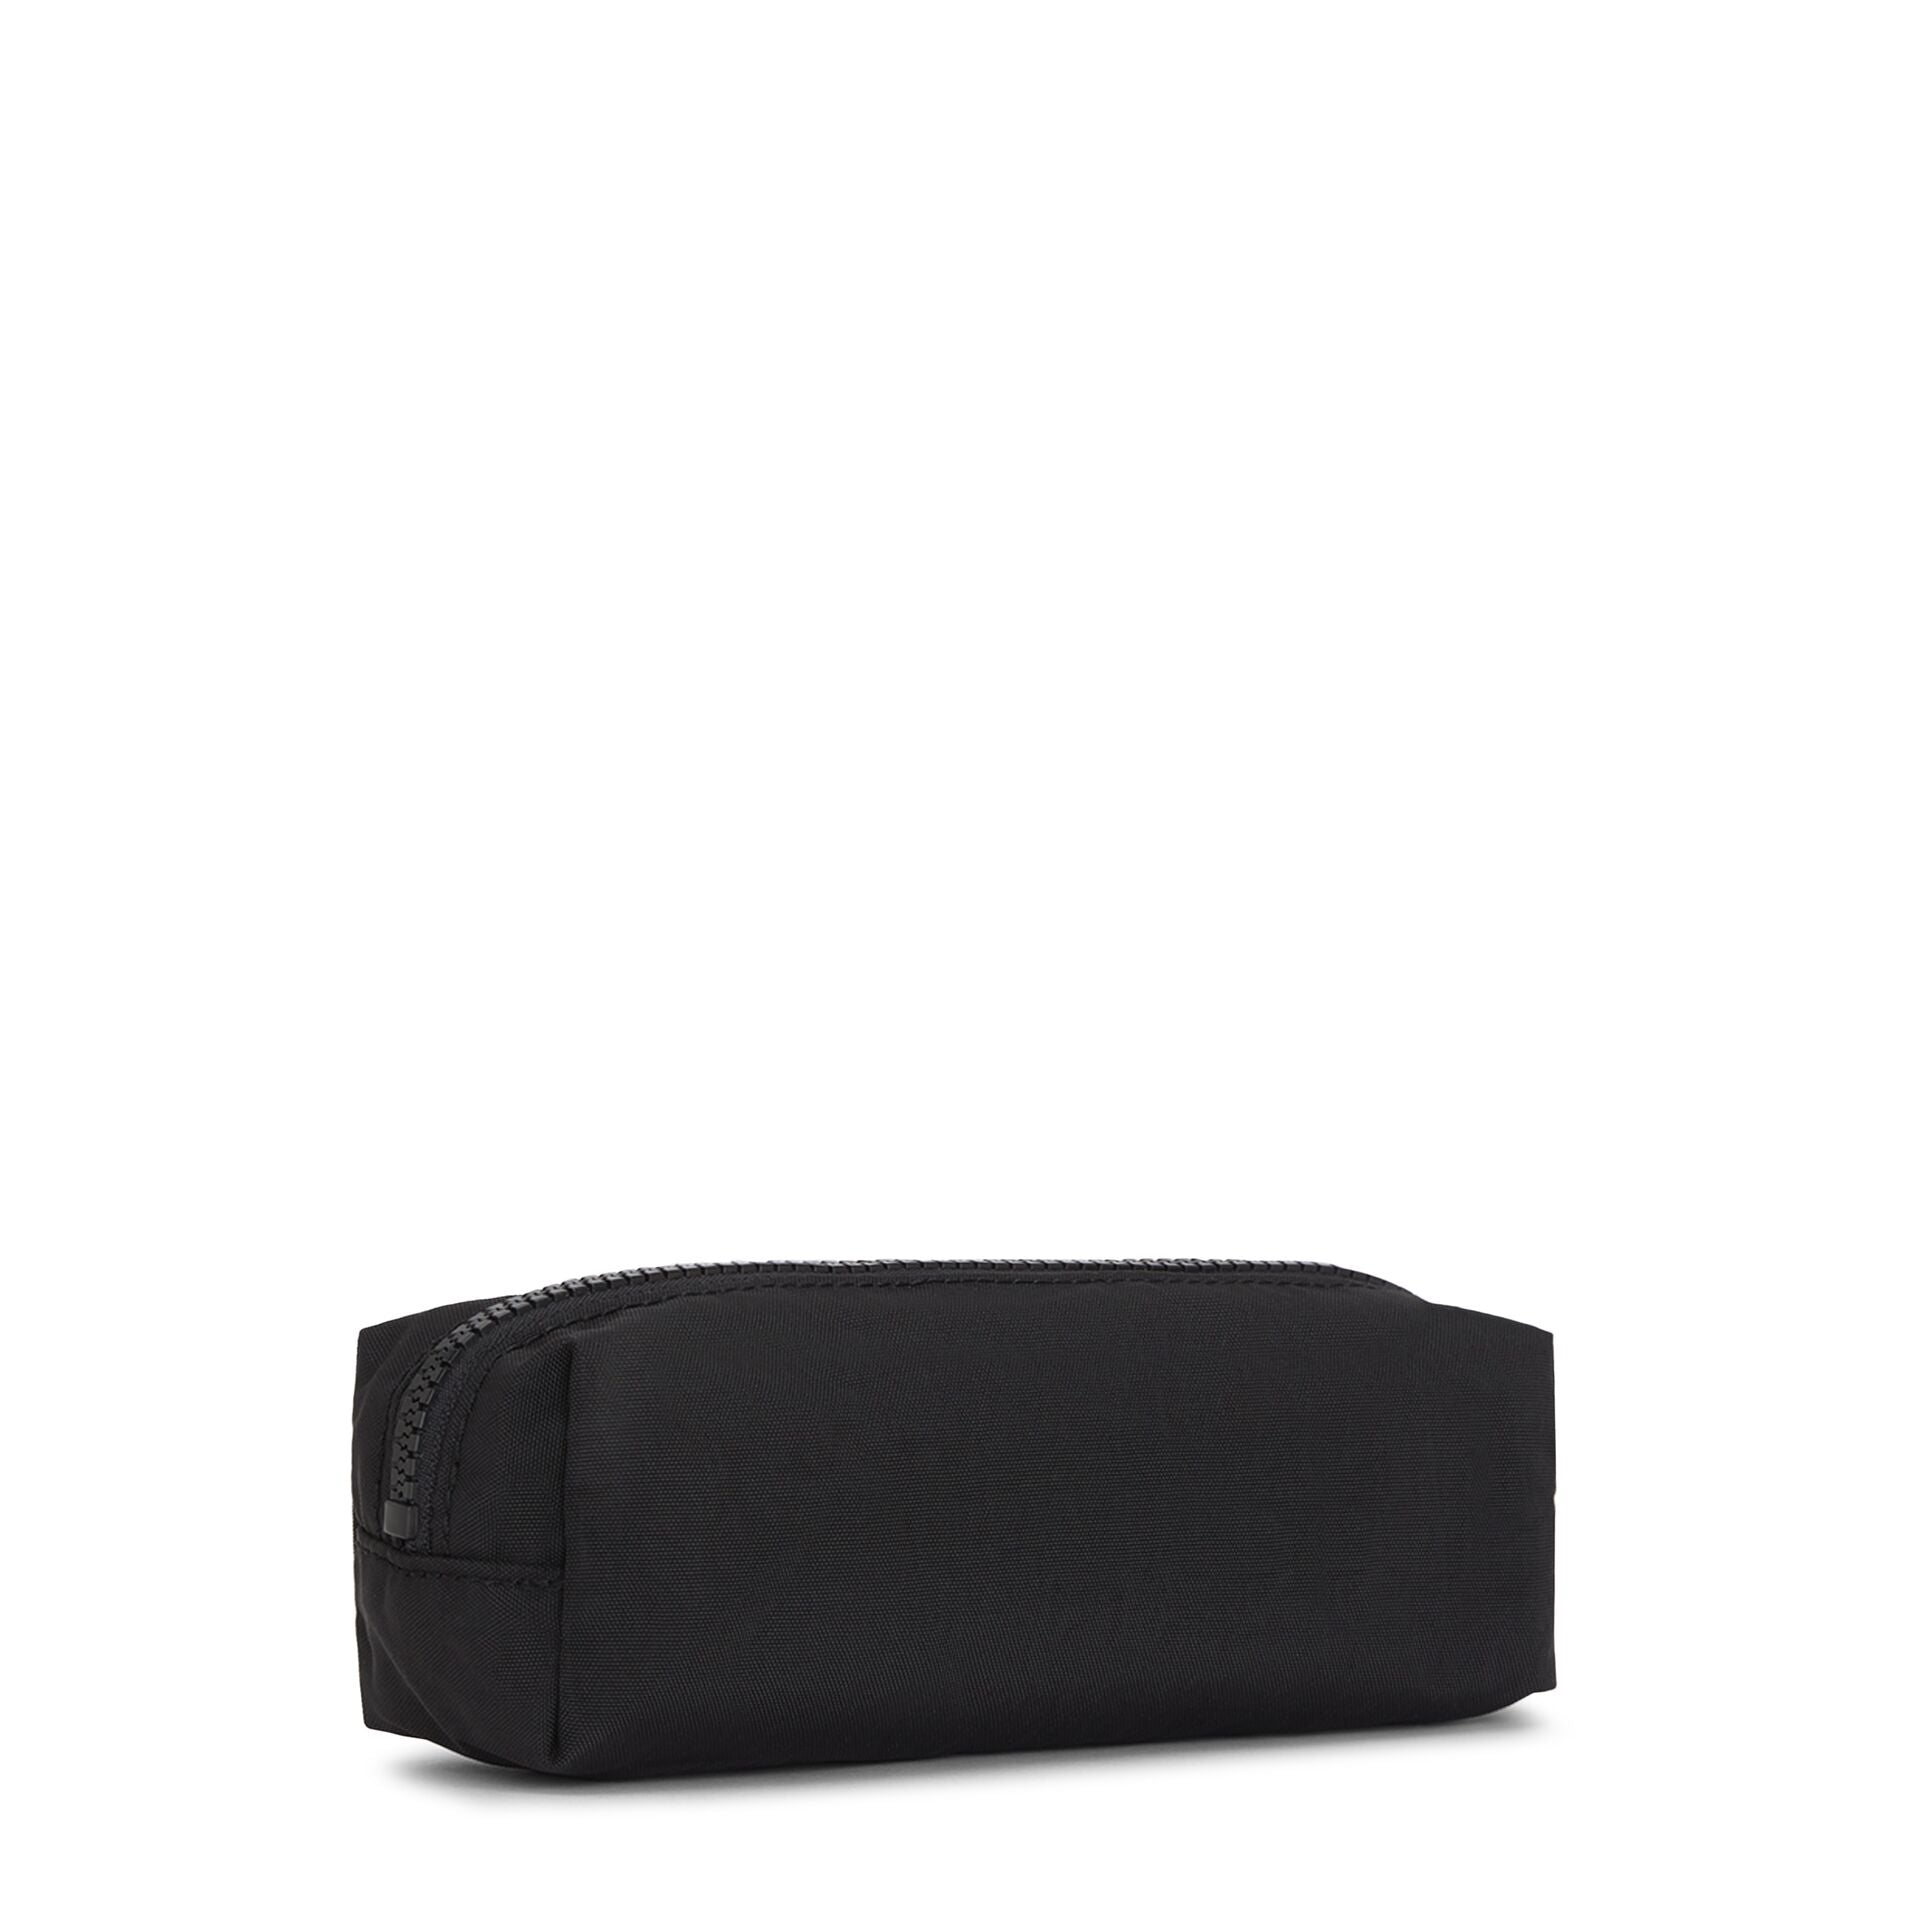 KIPLING-BORAN-Medium pouch-Black Lite-I4105-TL4